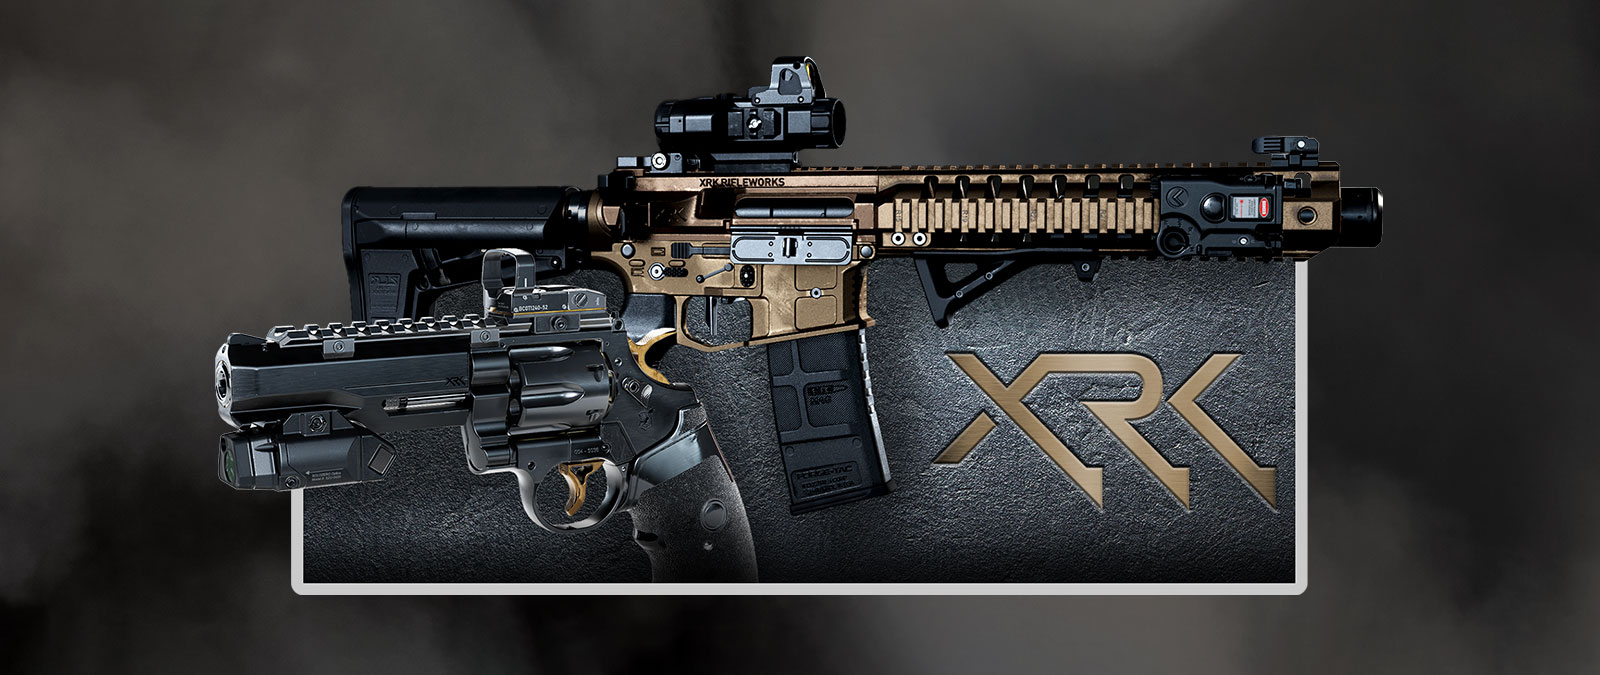 Zij-aanzicht van twee pistolen op een gestructureerde achtergrond en XRK-logo